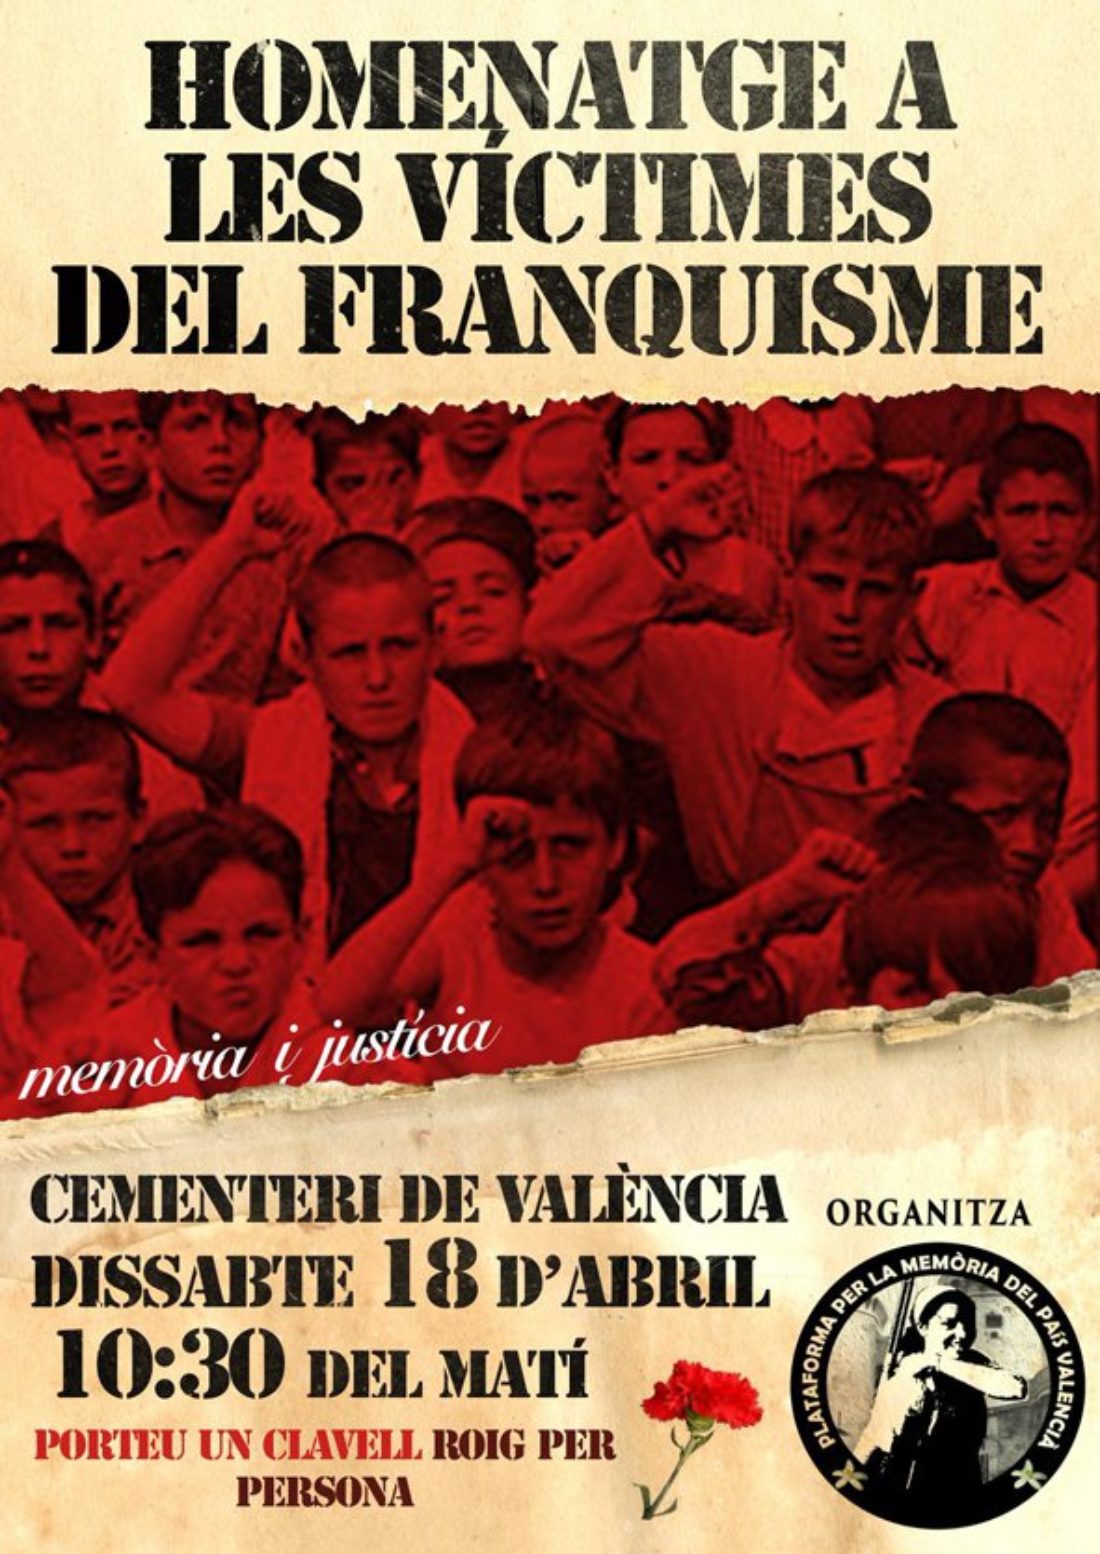 18-A: Homenaje a las víctimas del franquismo